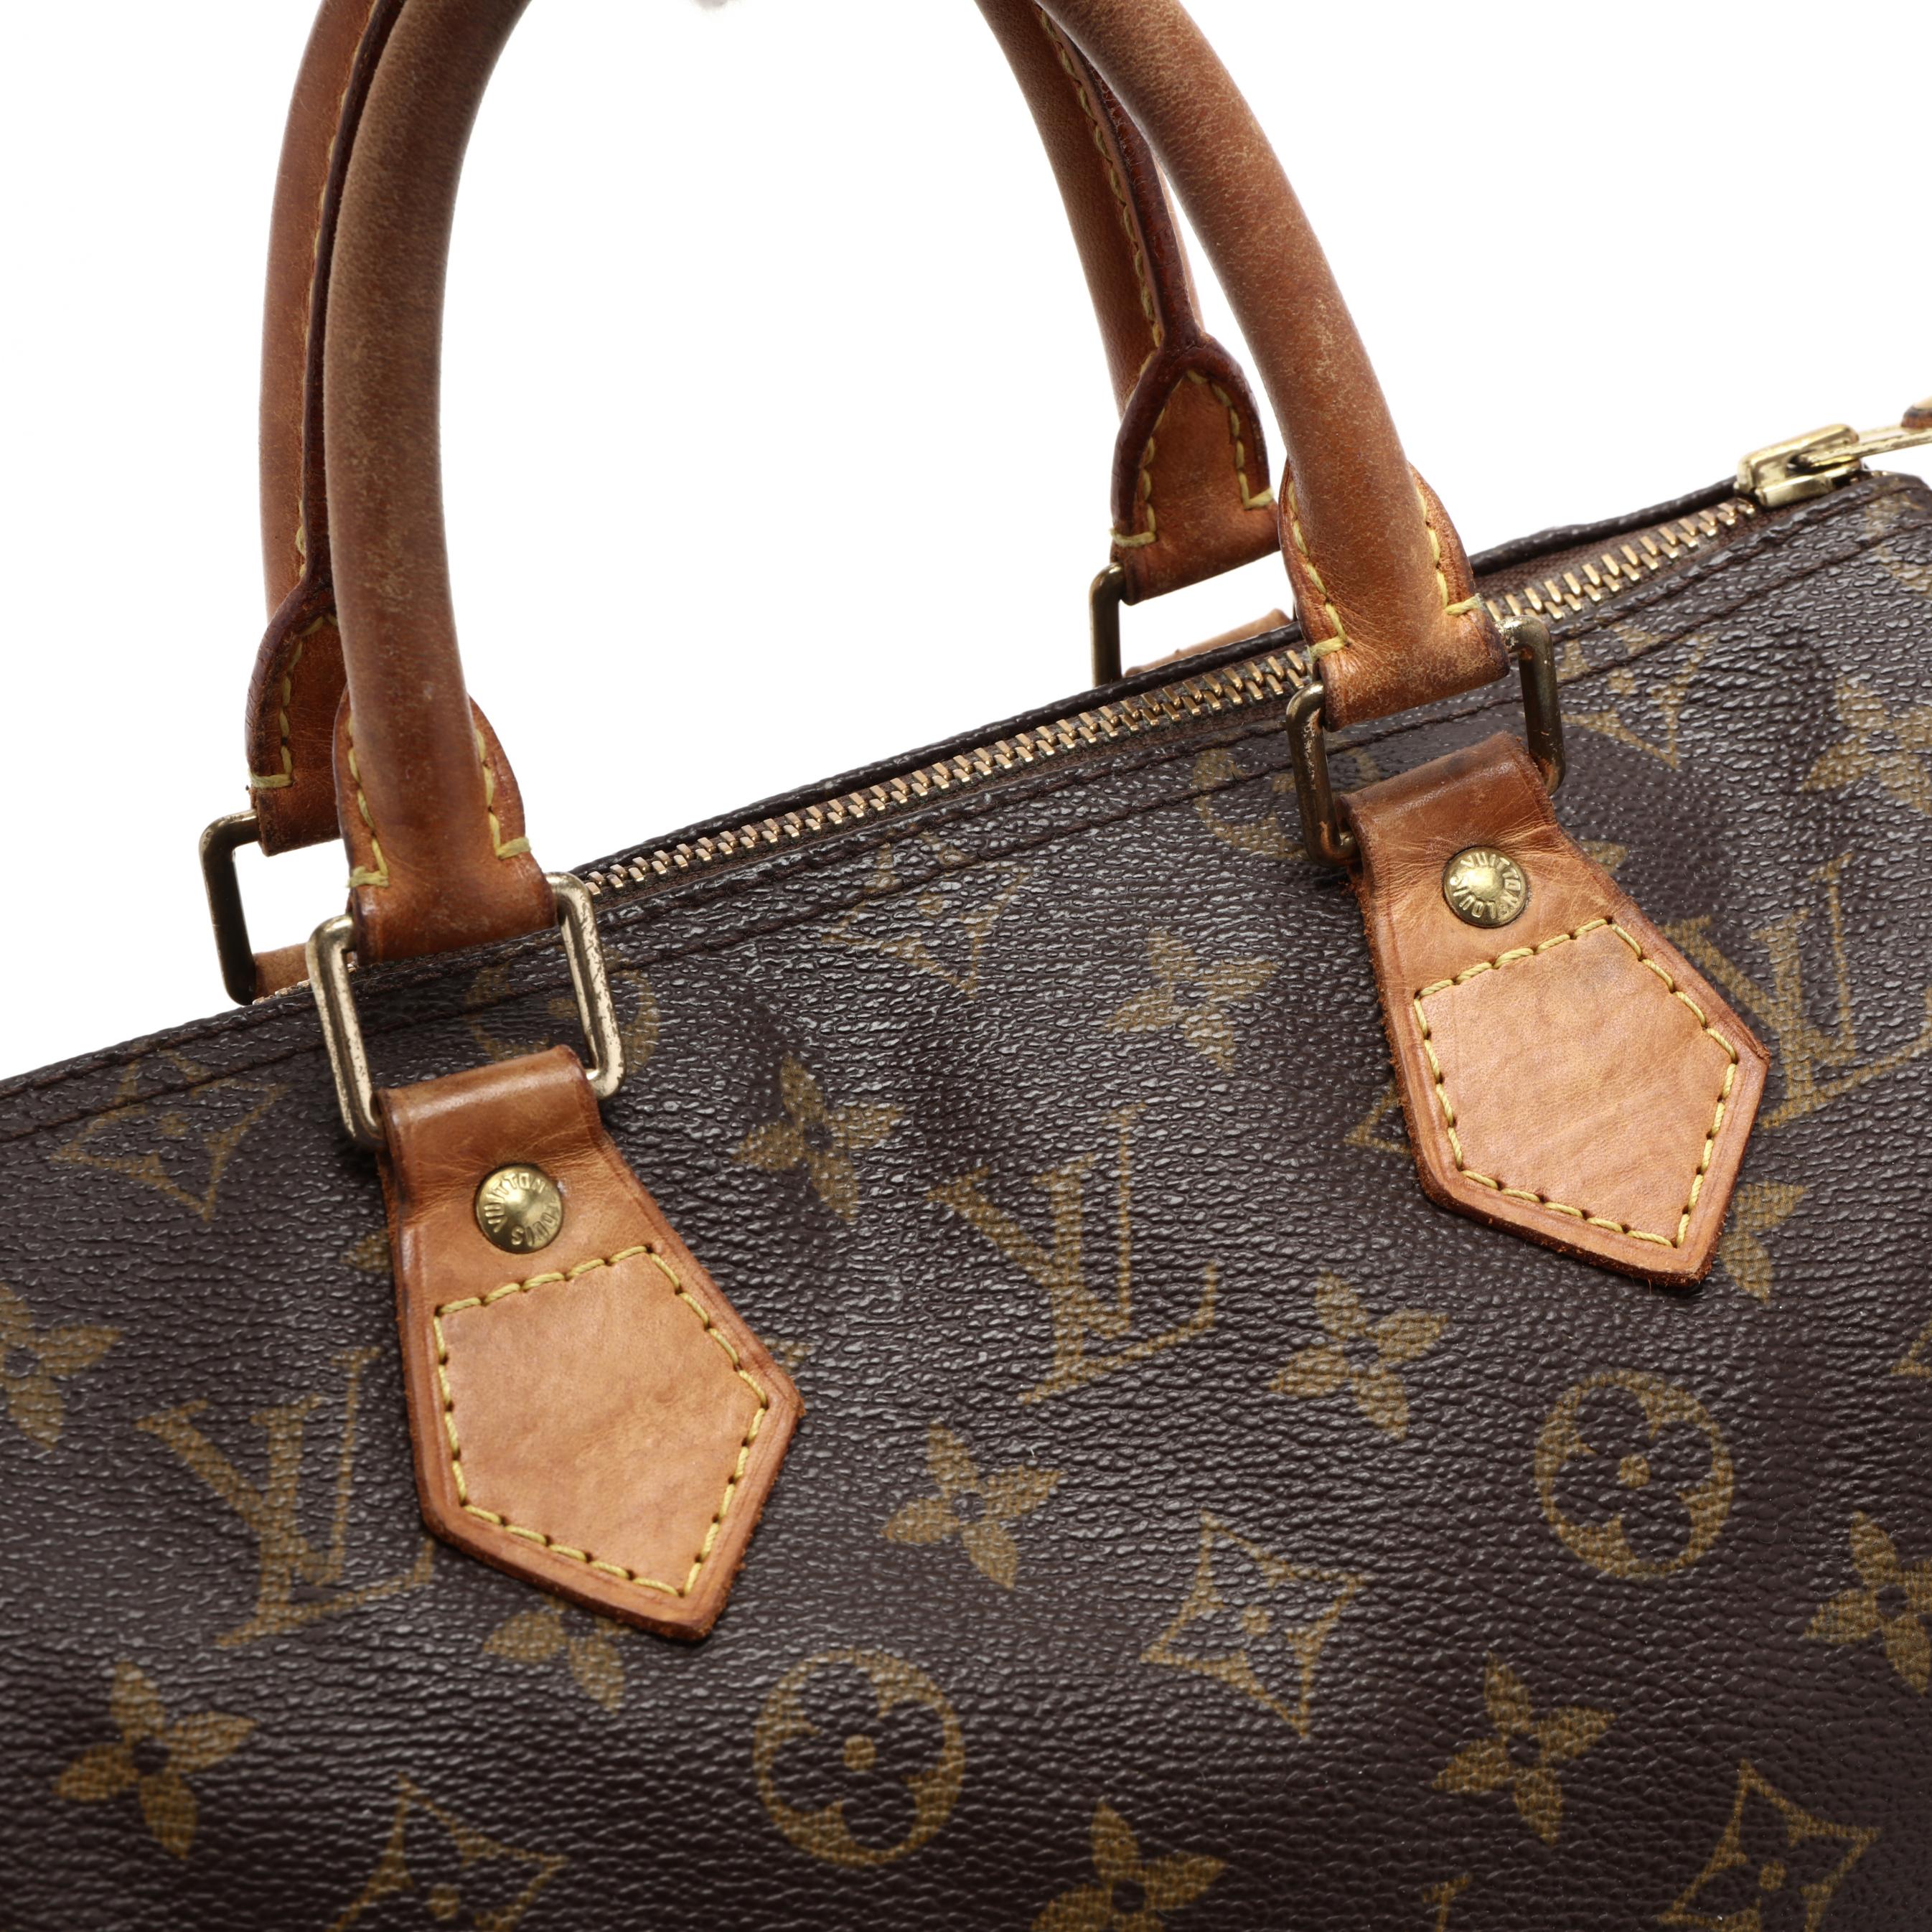 Sold at Auction: Louis Vuitton, Collection Printemps Eté 2012, Speedy Round  Denim, a Monogram coated fabric handbag